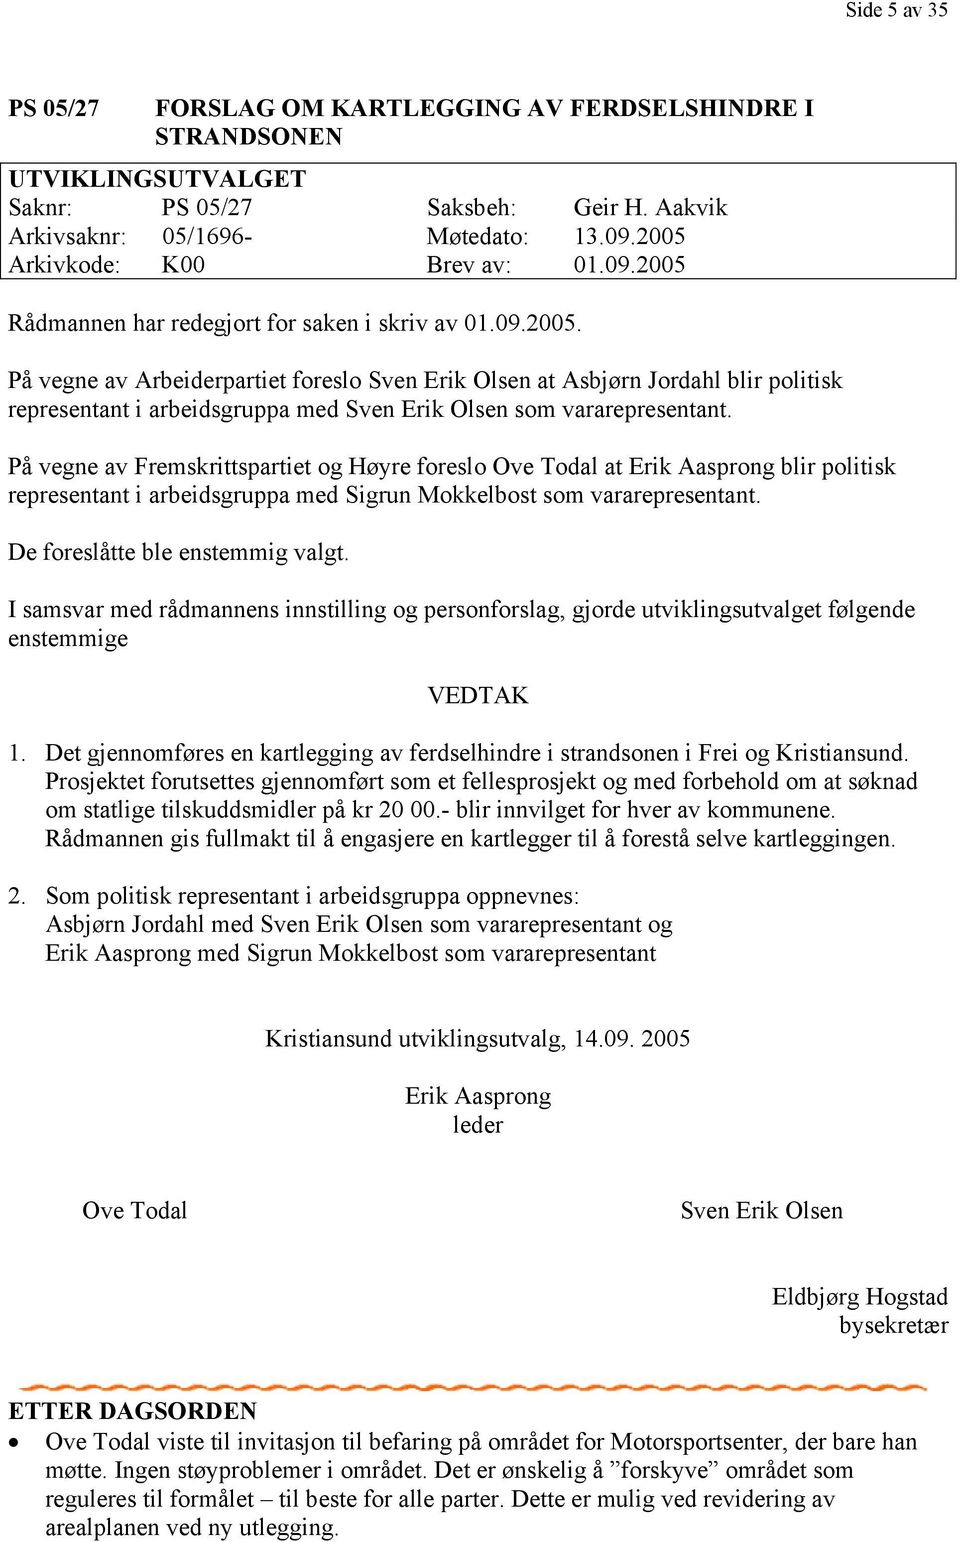 På vegne av Fremskrittspartiet og Høyre foreslo Ove Todal at Erik Aasprong blir politisk representant i arbeidsgruppa med Sigrun Mokkelbost som vararepresentant. De foreslåtte ble enstemmig valgt.